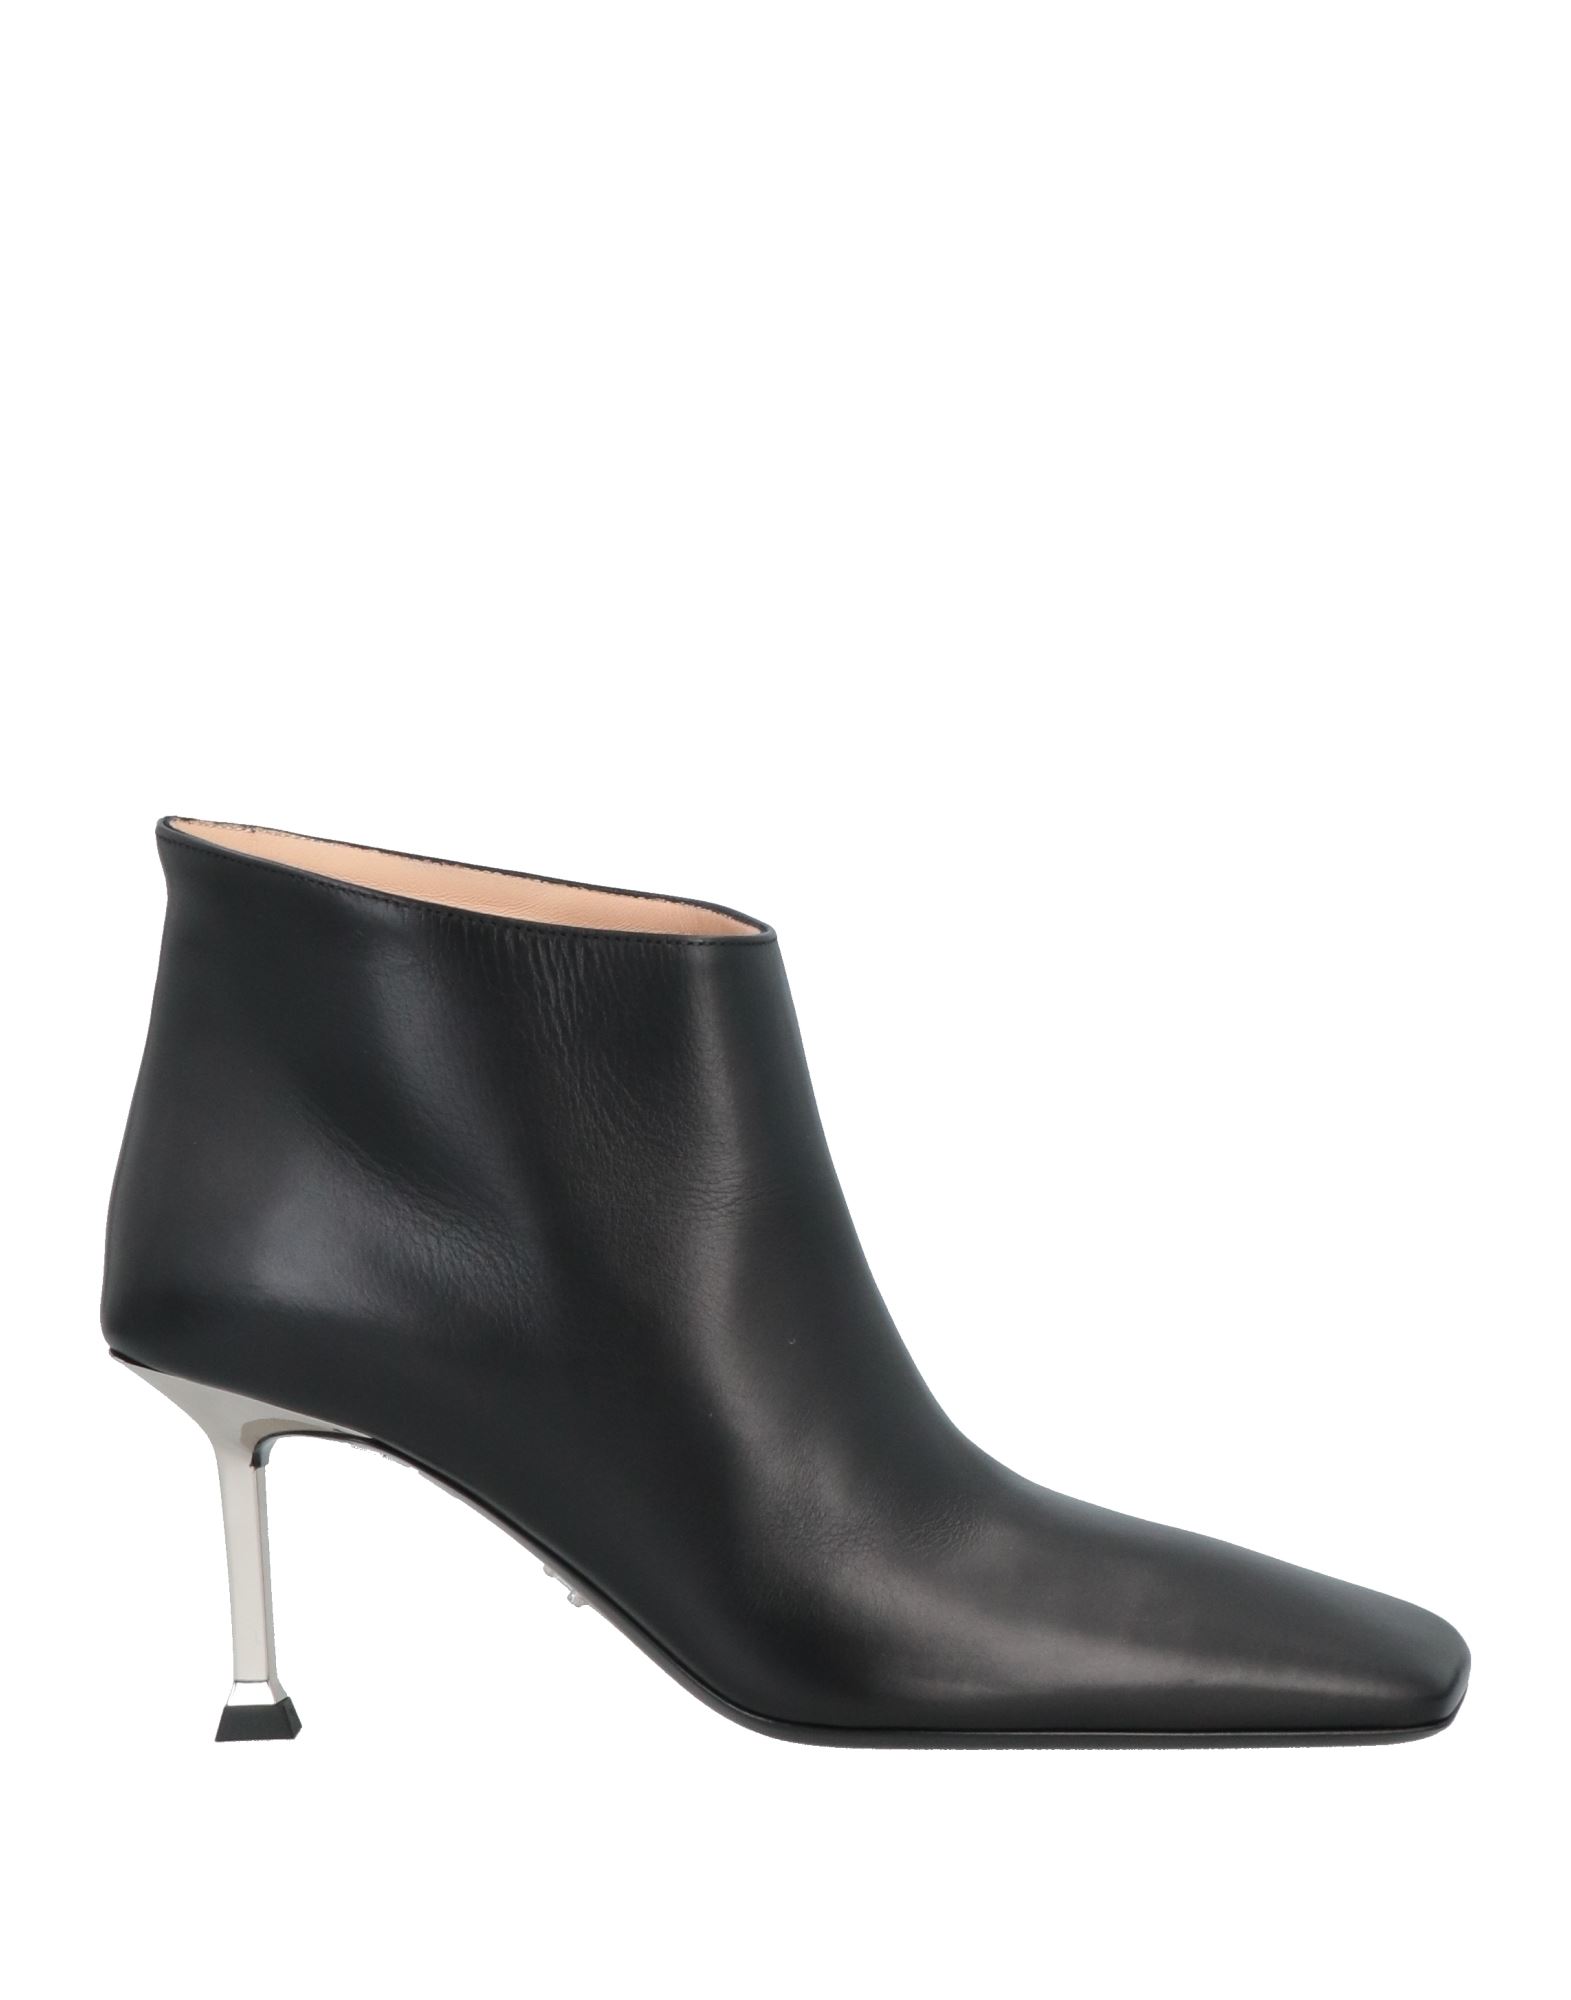 Shop Cesare Paciotti Woman Ankle Boots Black Size 8 Soft Leather